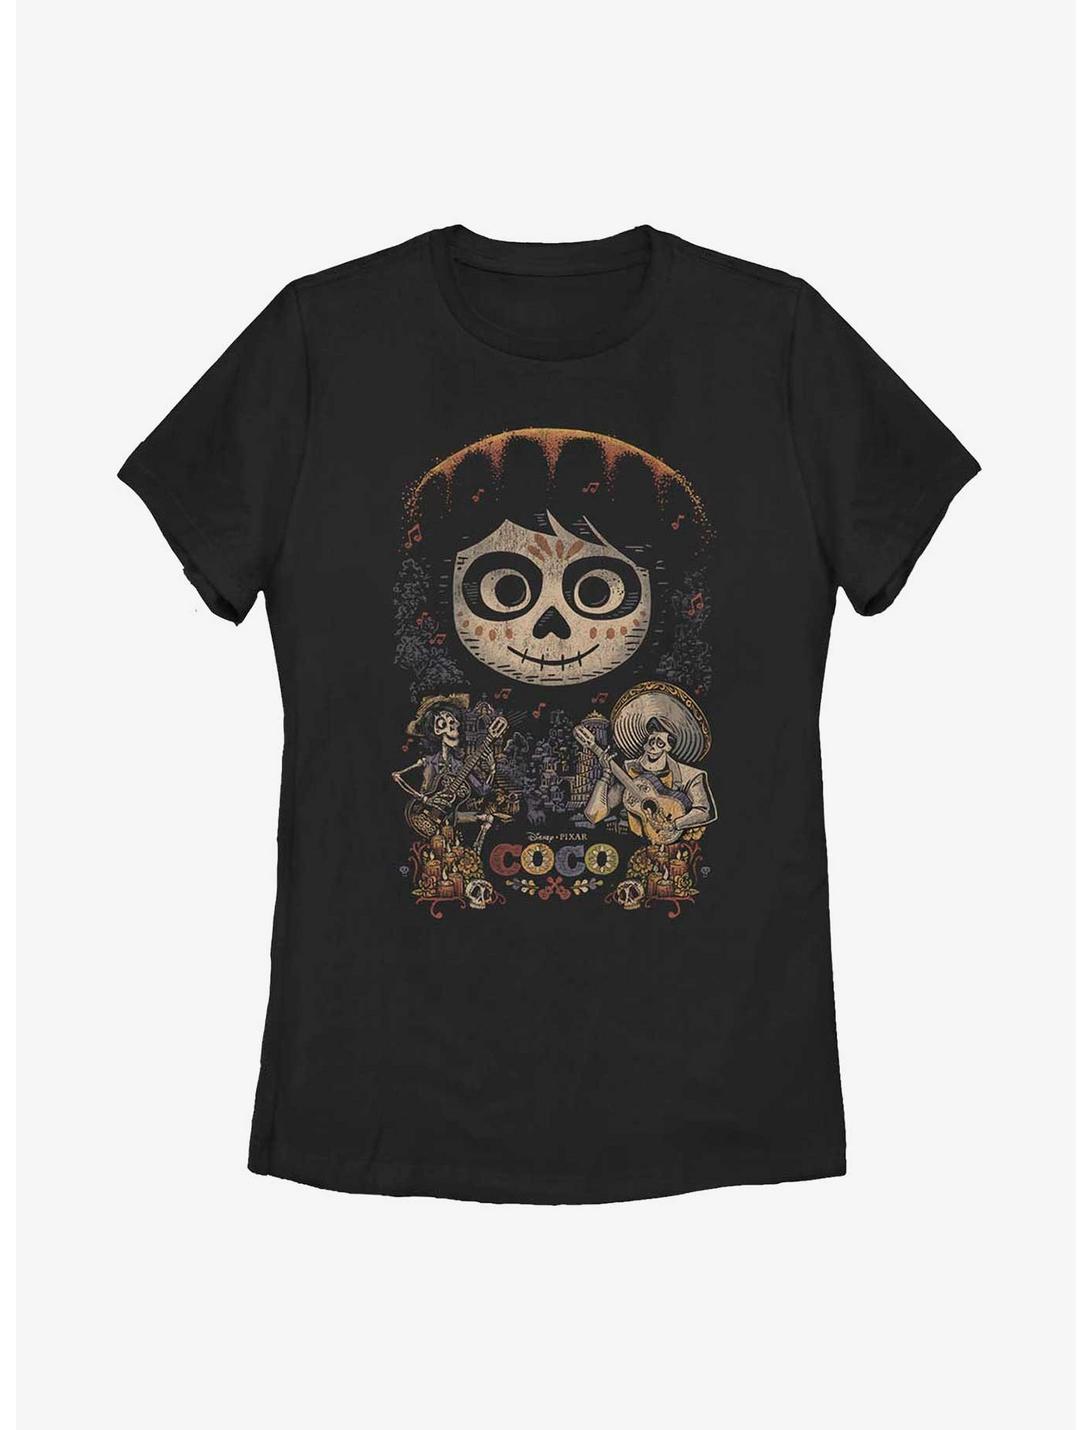 Disney Pixar Coco Poster Womens T-Shirt, BLACK, hi-res